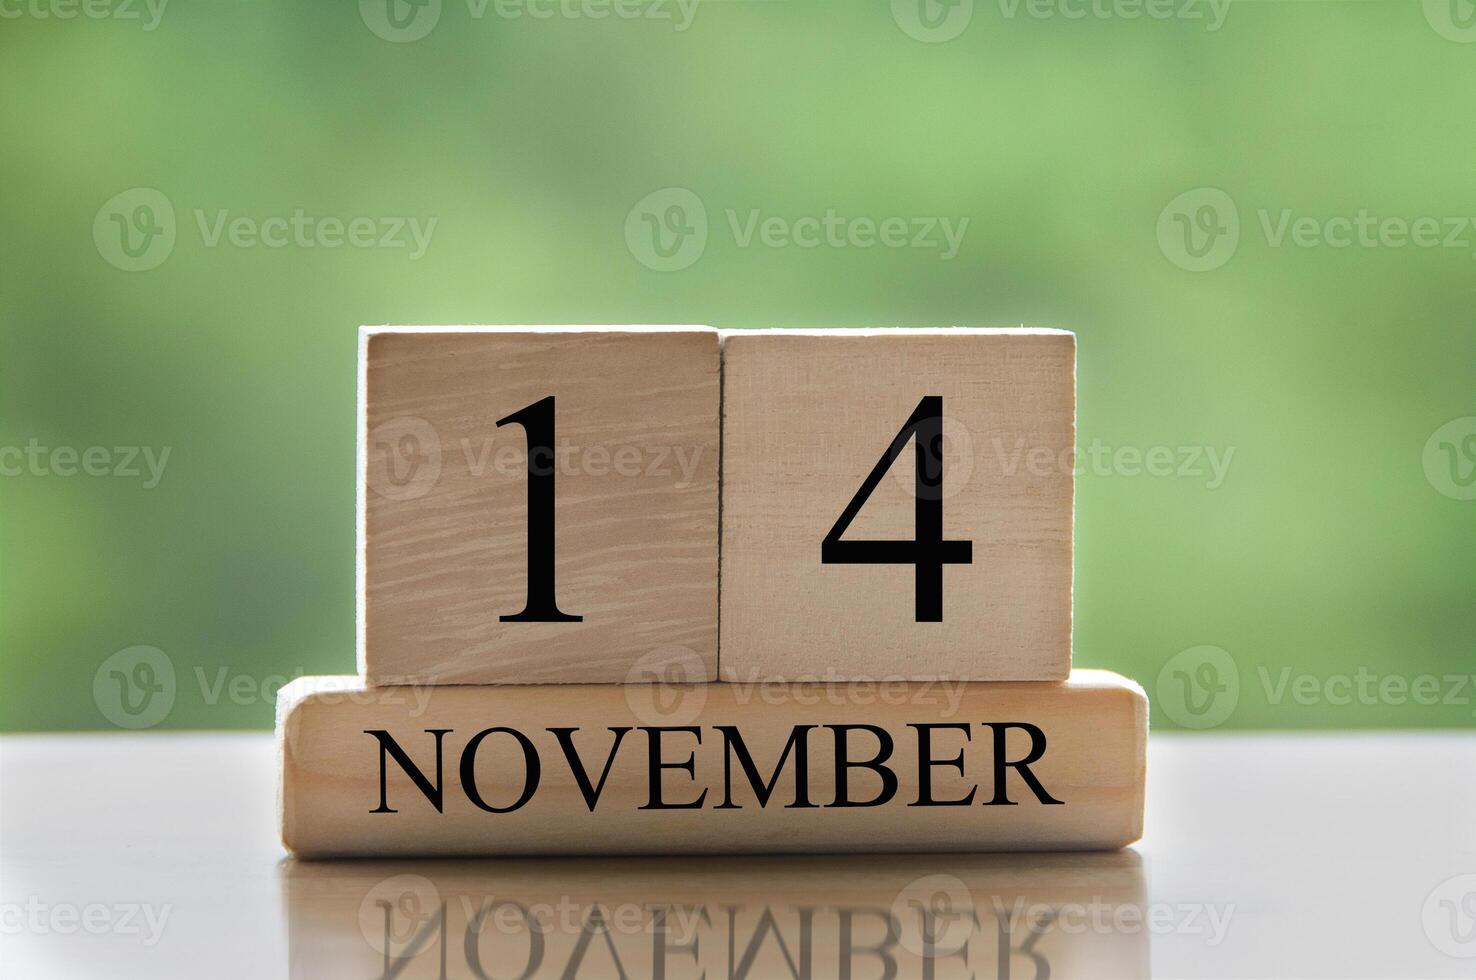 14 november kalenderdatum text på träblock med kopia utrymme för idéer eller text. kopieringsutrymme foto